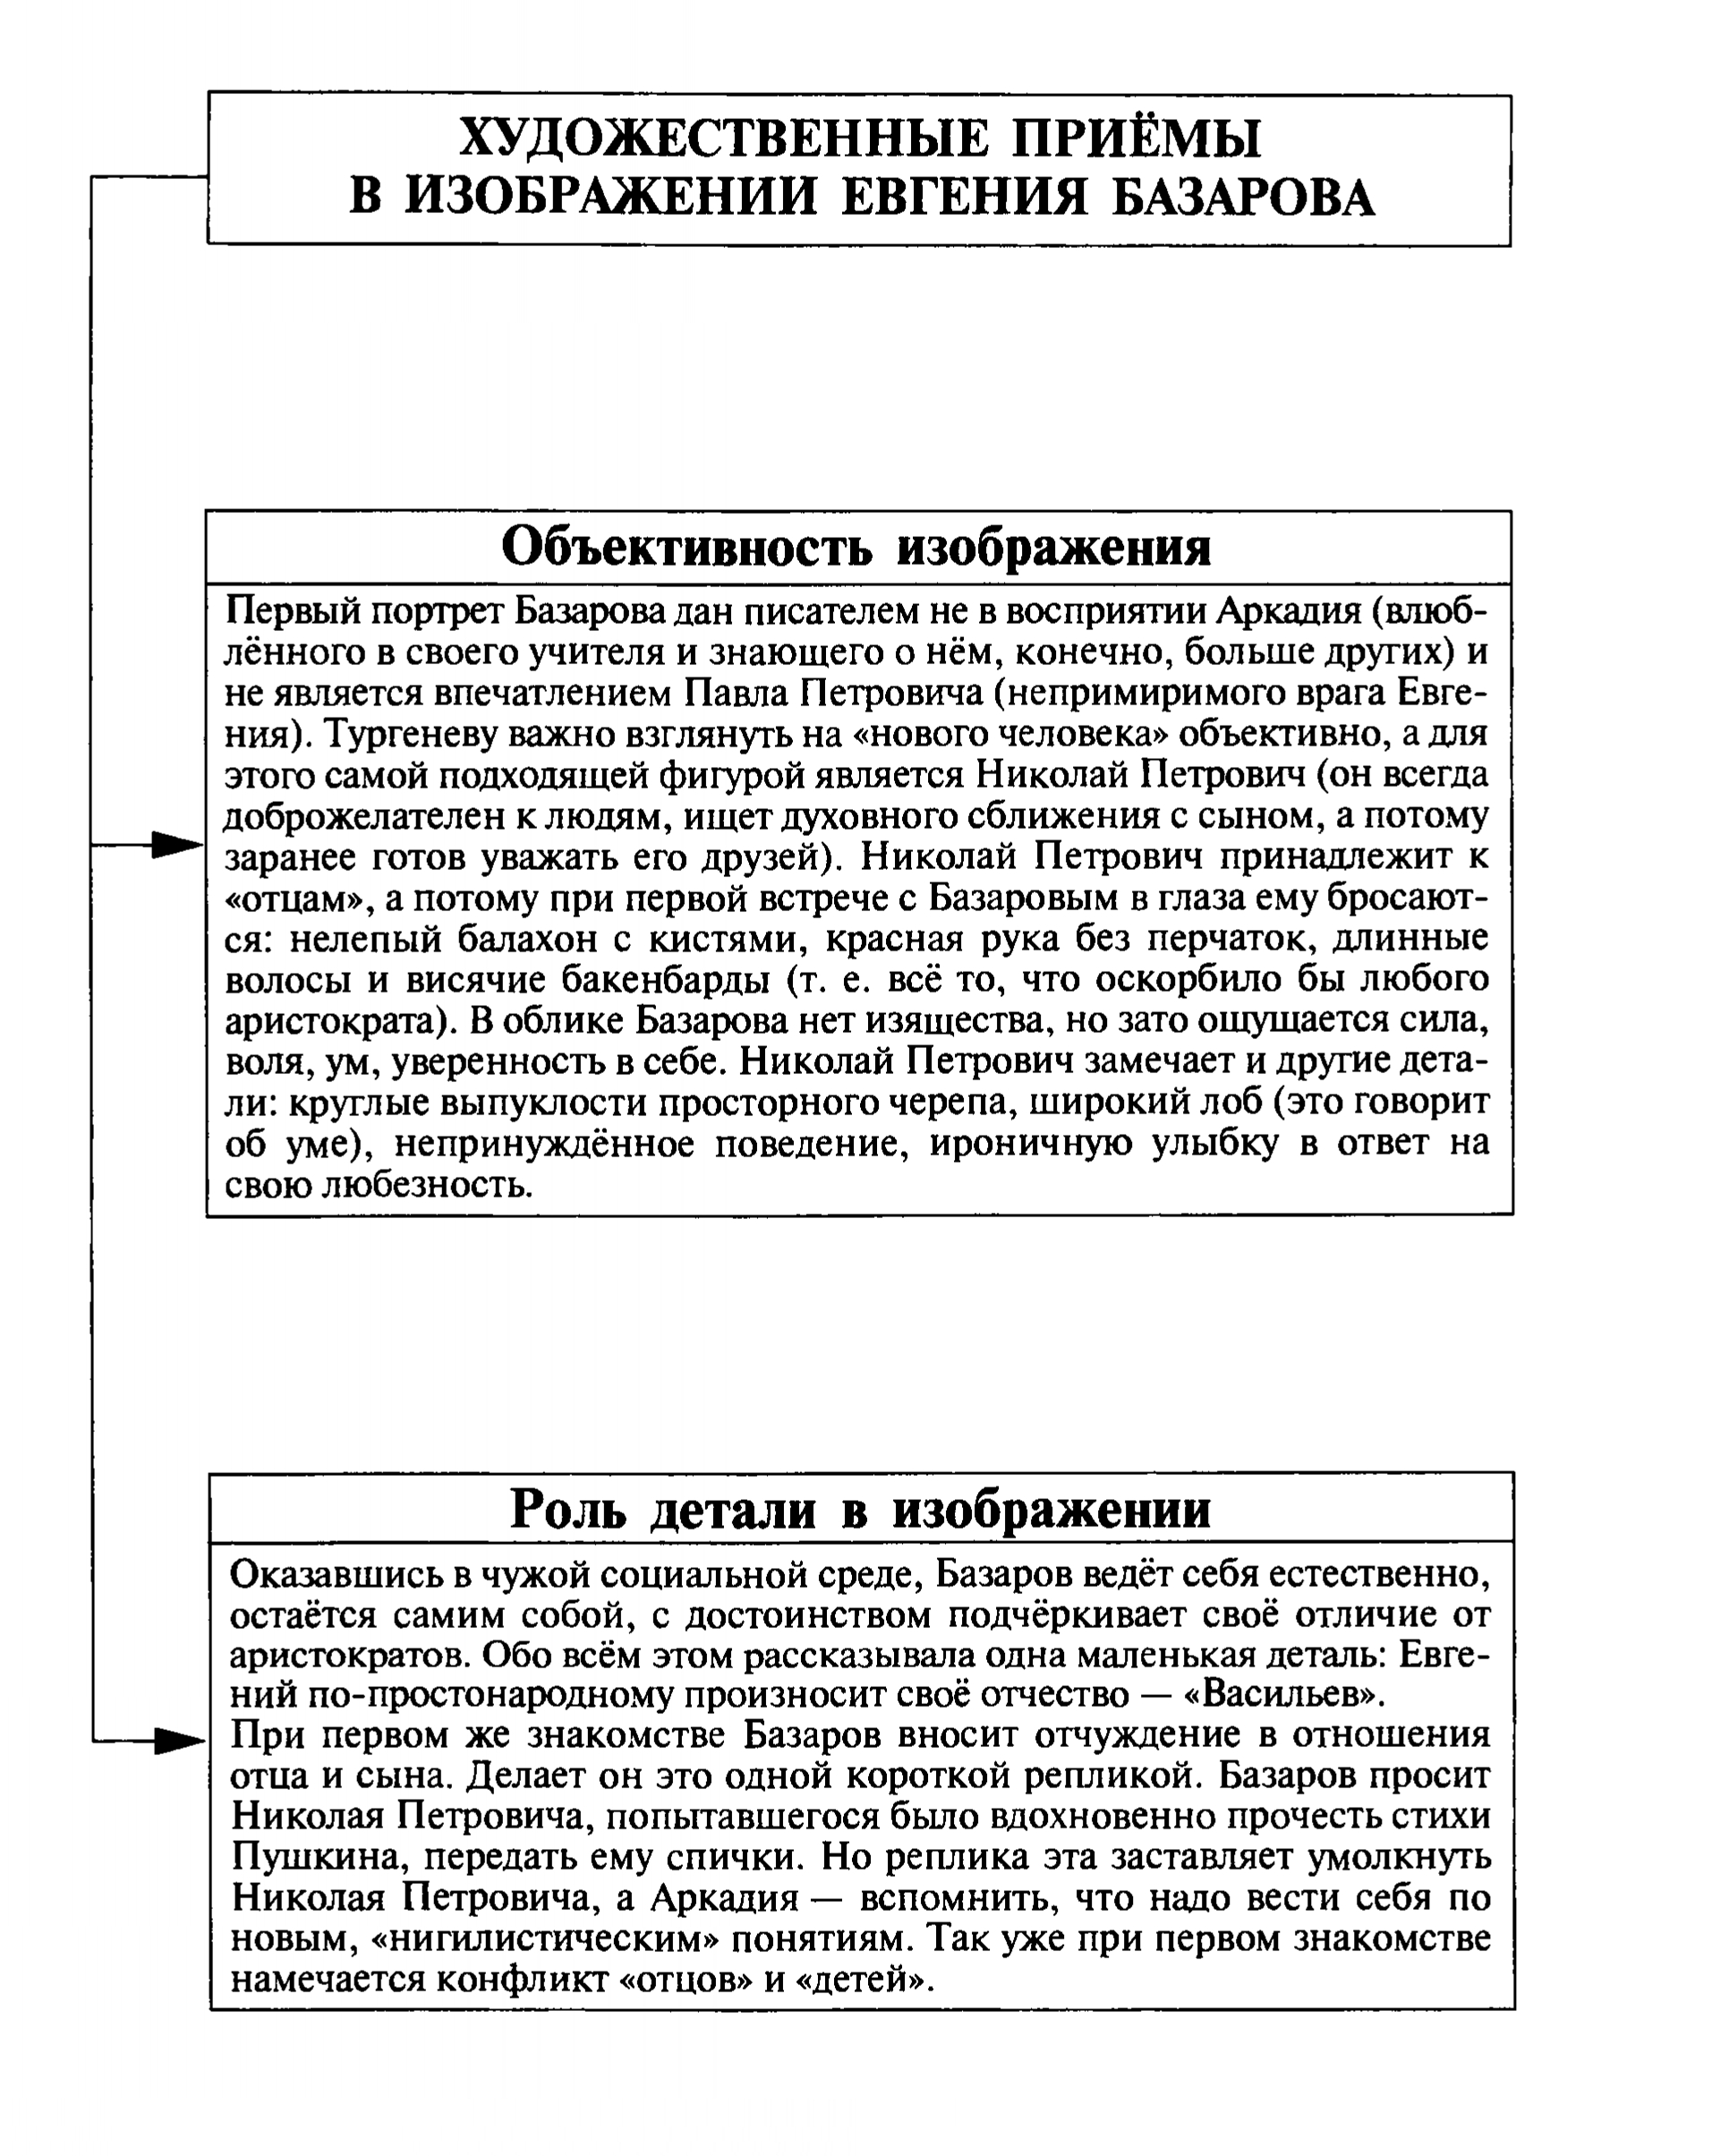 Художественные приёмы в изображении Базарова (таблица)